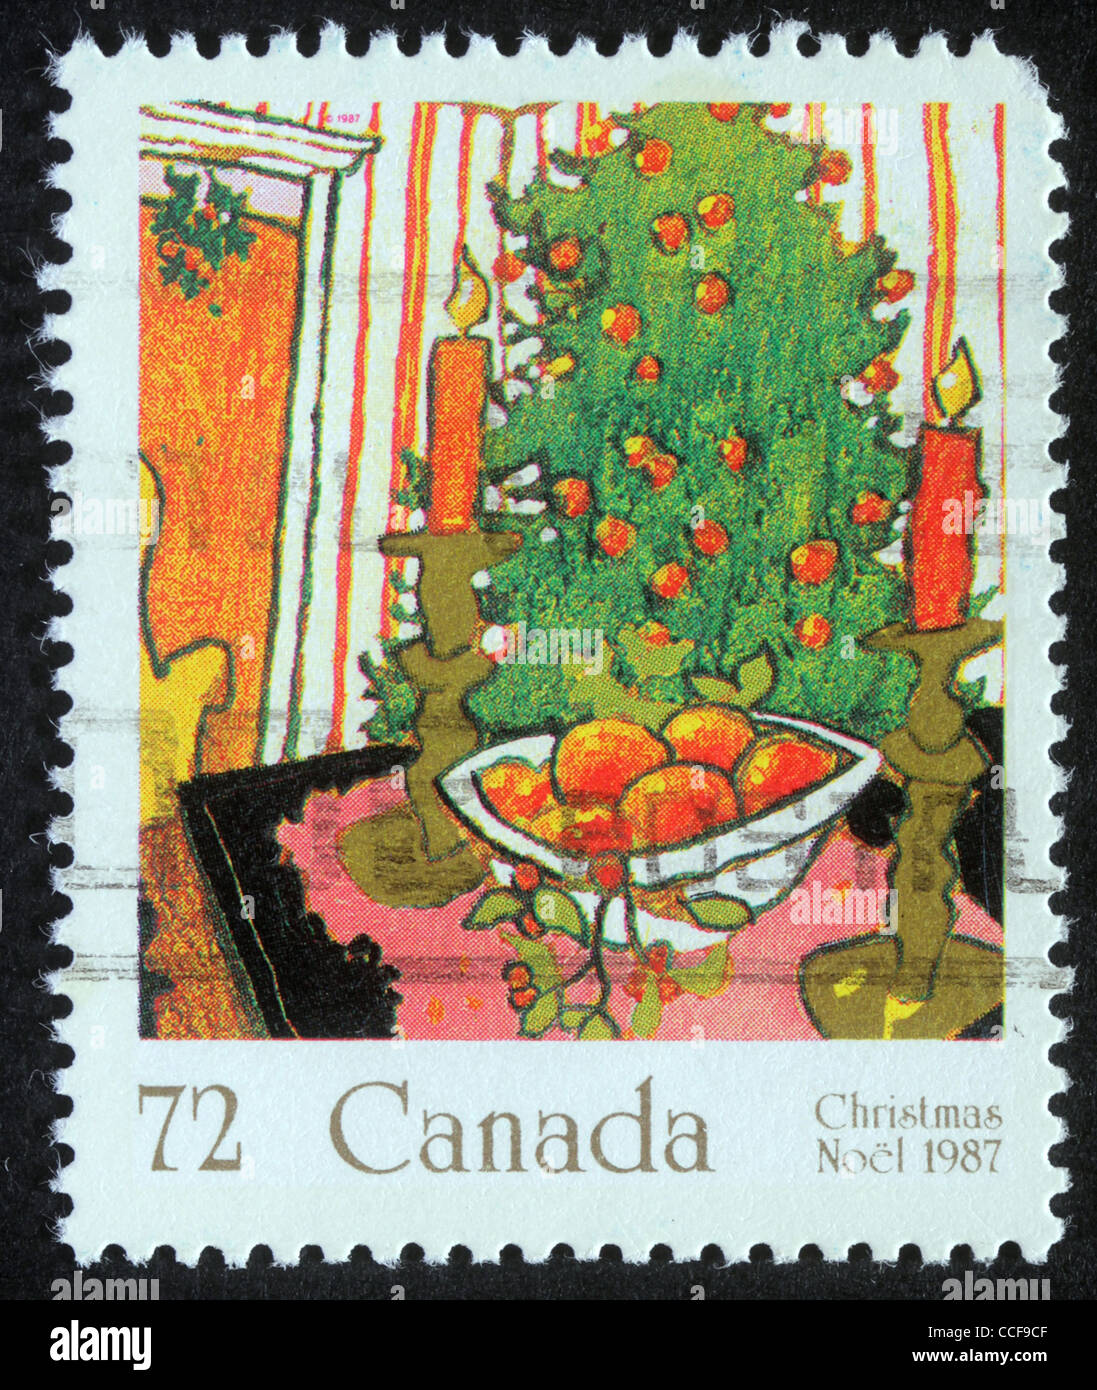 Un voeux de Noël de timbres au Canada, vers 1987 Banque D'Images